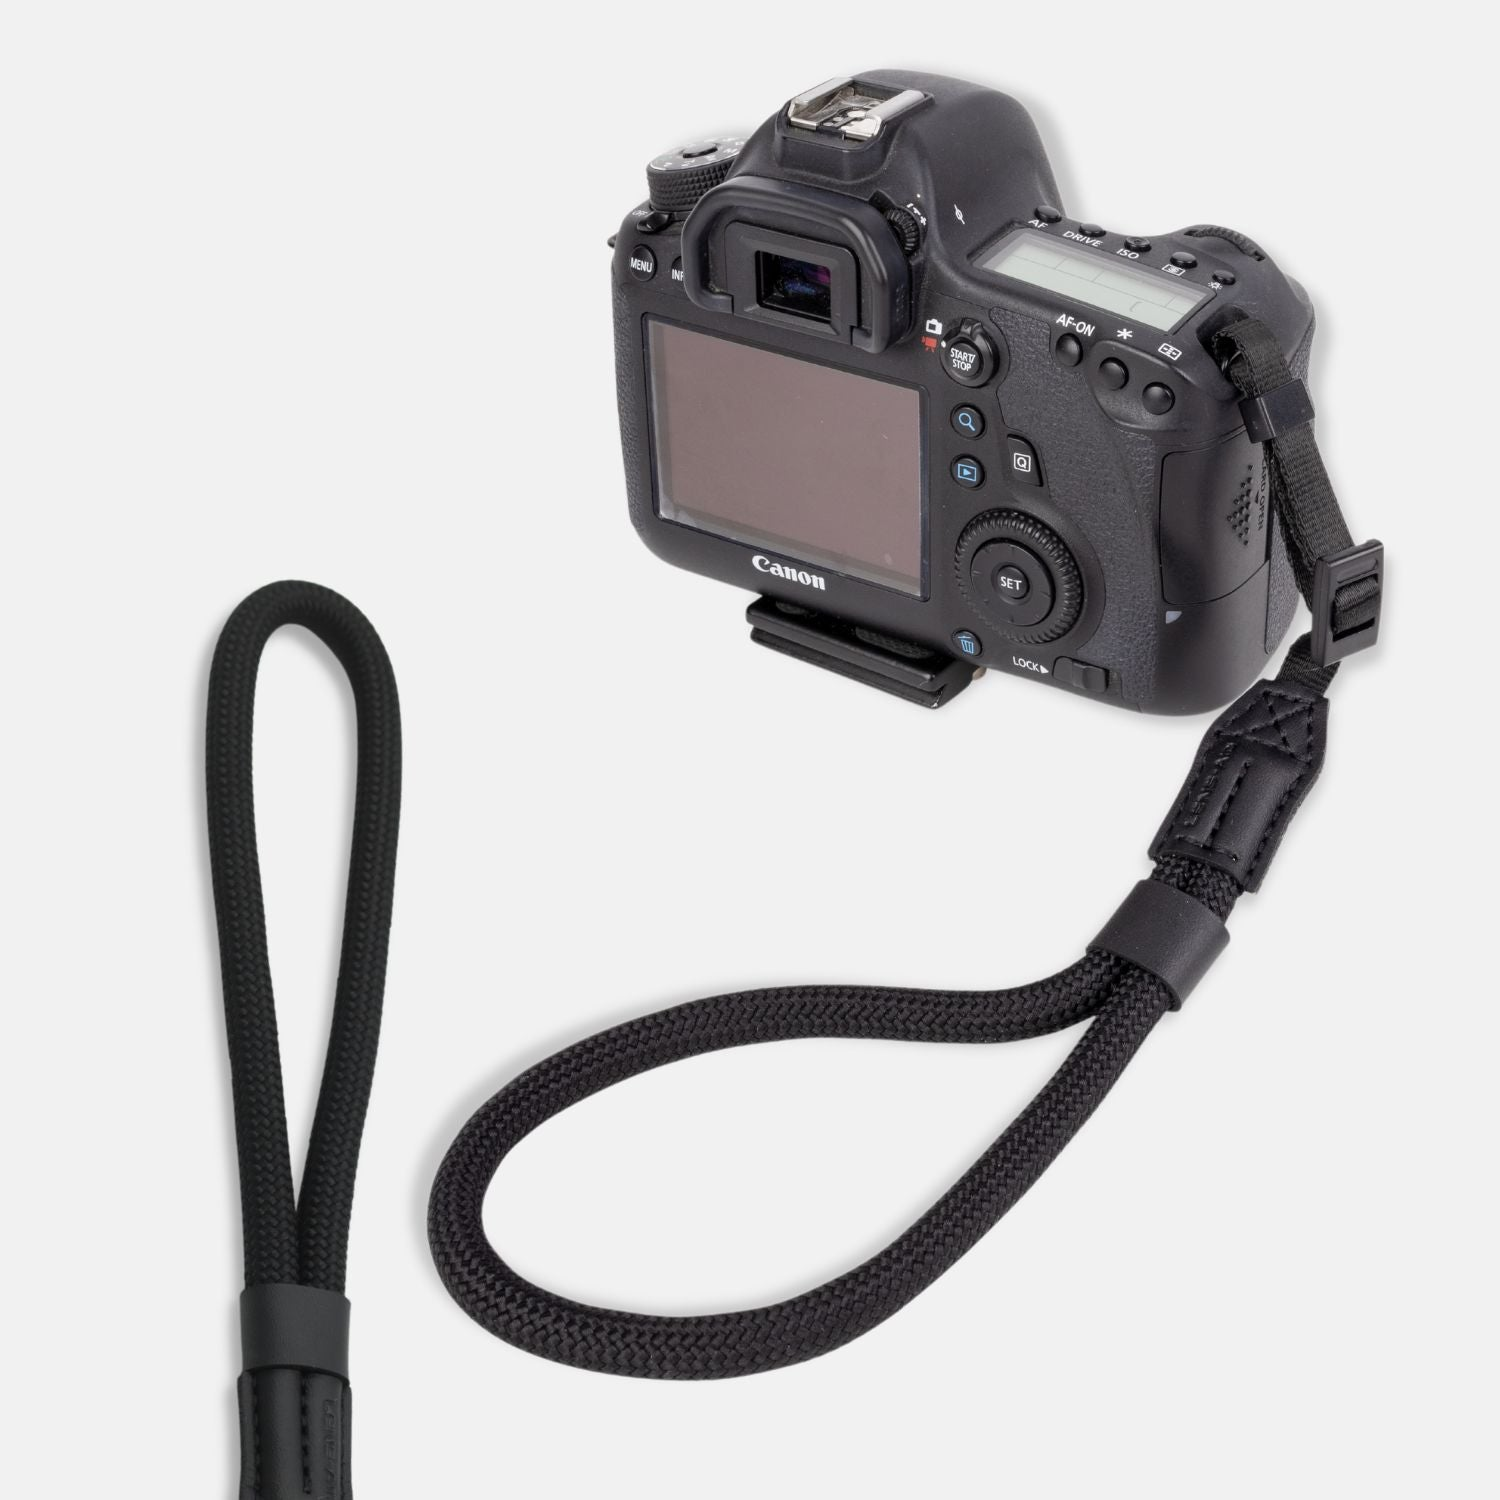 Handschlaufe, Schwarz, Sony schmale Fujifilm, Nikon, für kleine Olympus, oder Handschlaufe Leica für in passend Ösen, Alpha, Seil-Optik LENS-AID Kamera Canon,